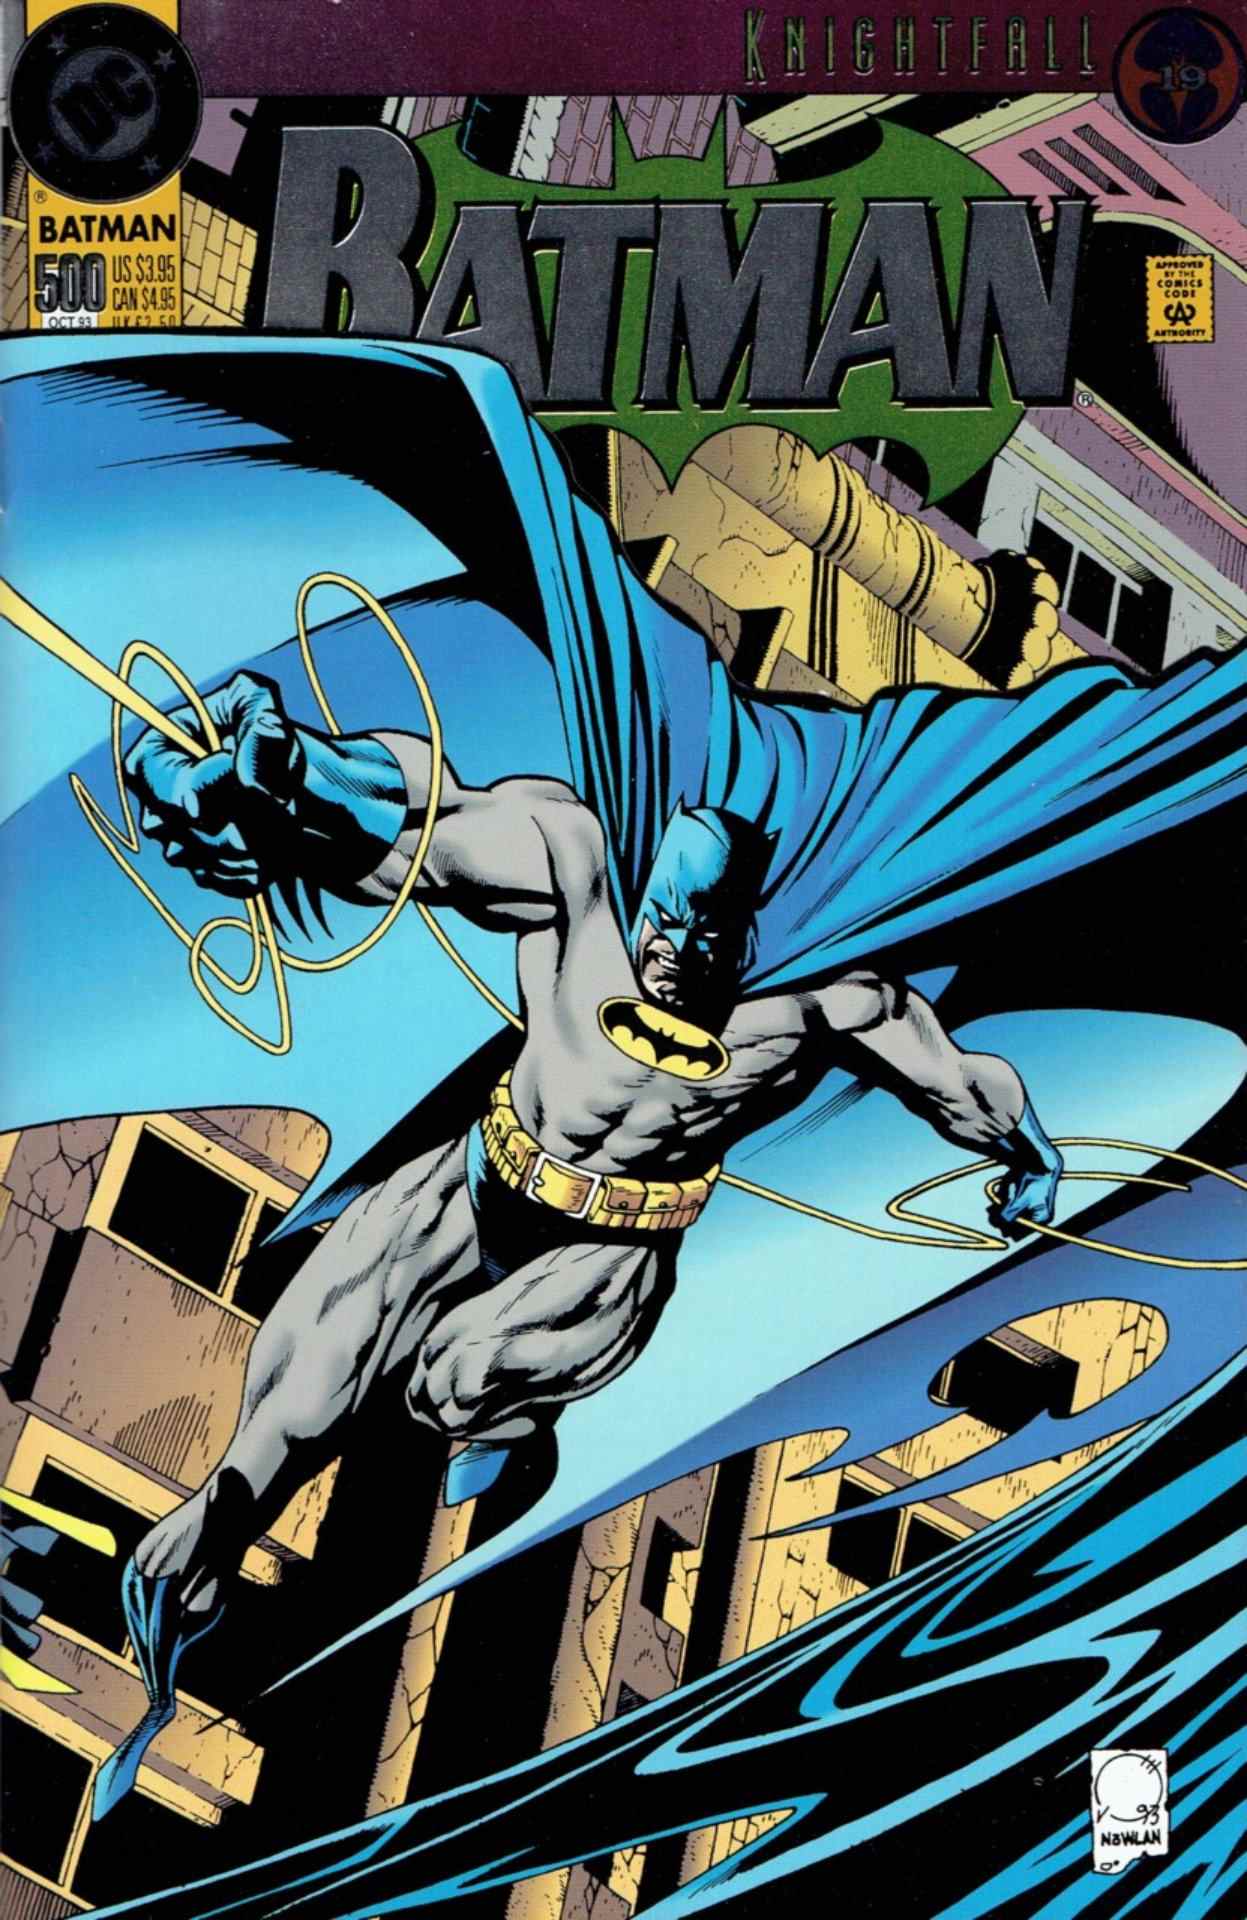 Couverture de Batman # 500 de 1993 par Joe Quesada